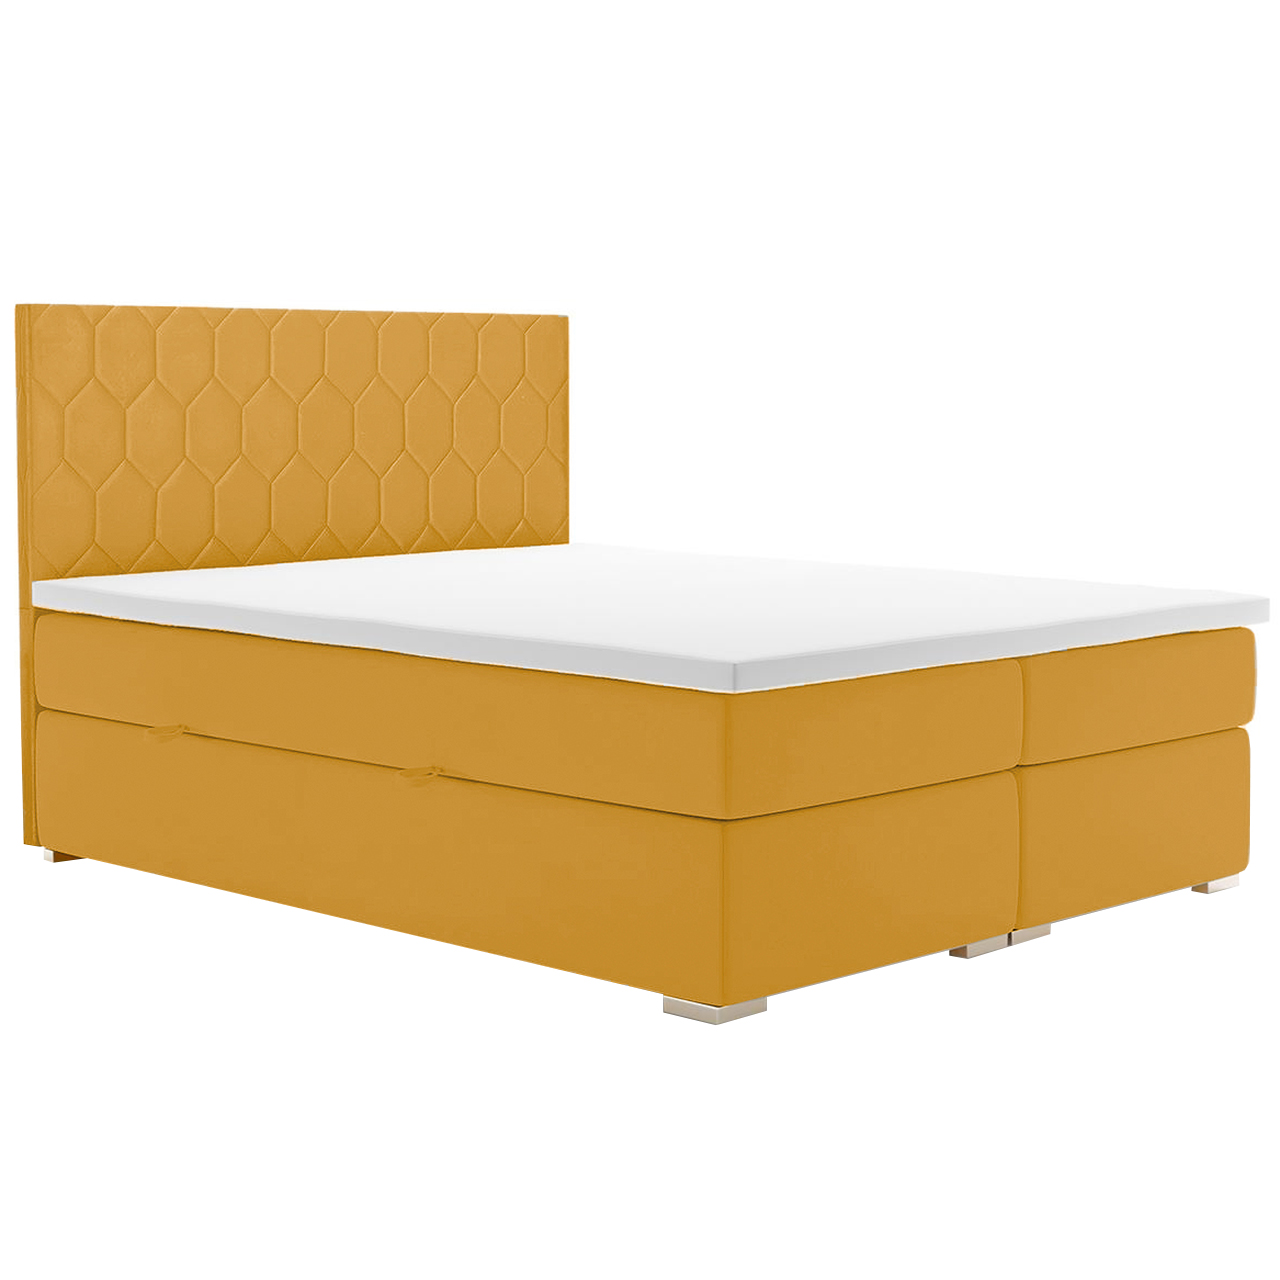 Upholstered bed PILATES 160x200 magic velvet 2215